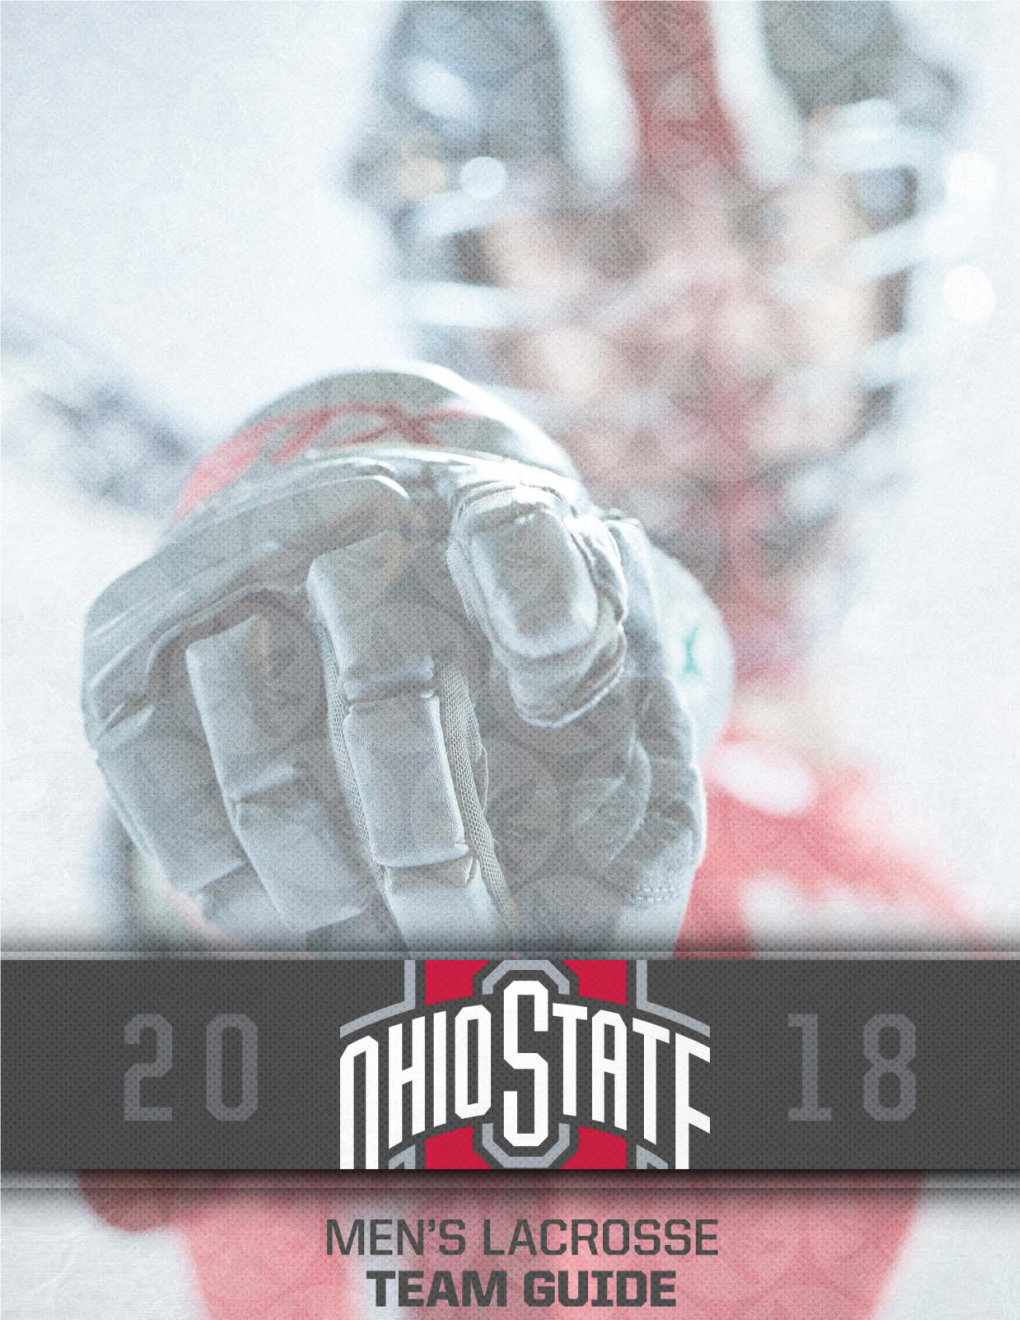 2018 Ohio State Men's Lacrosse